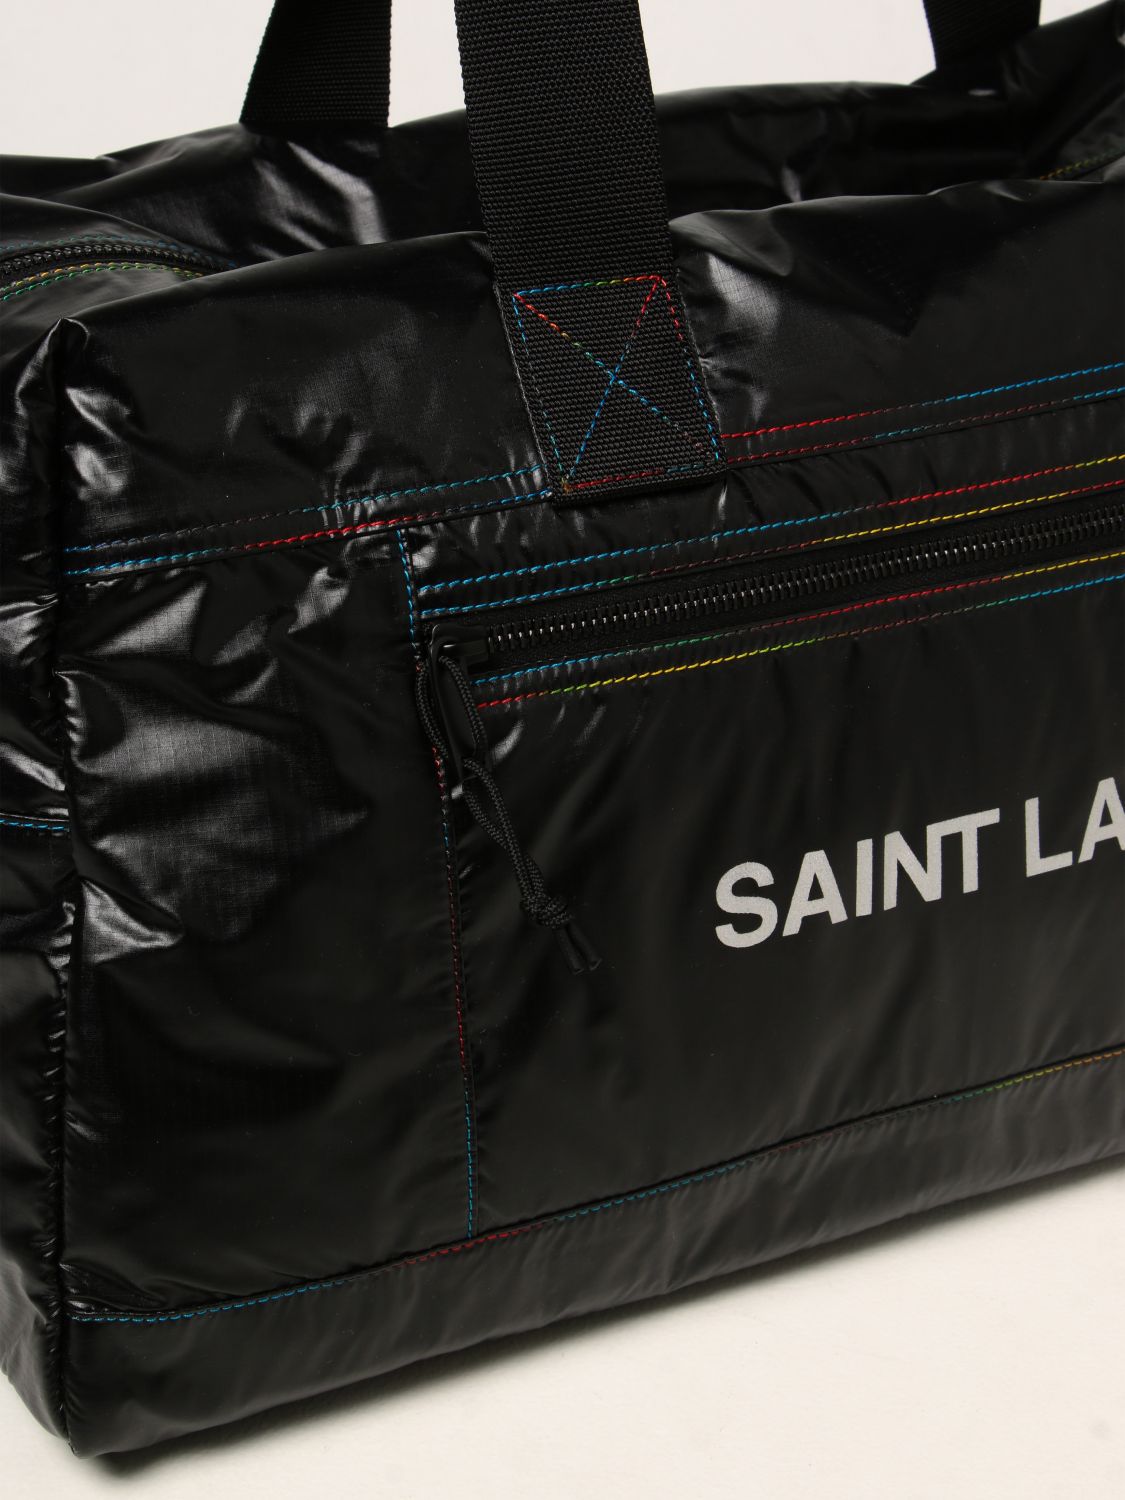 Travel bag Saint Laurent: Saint Laurent Nuxx Duffle bag black 4